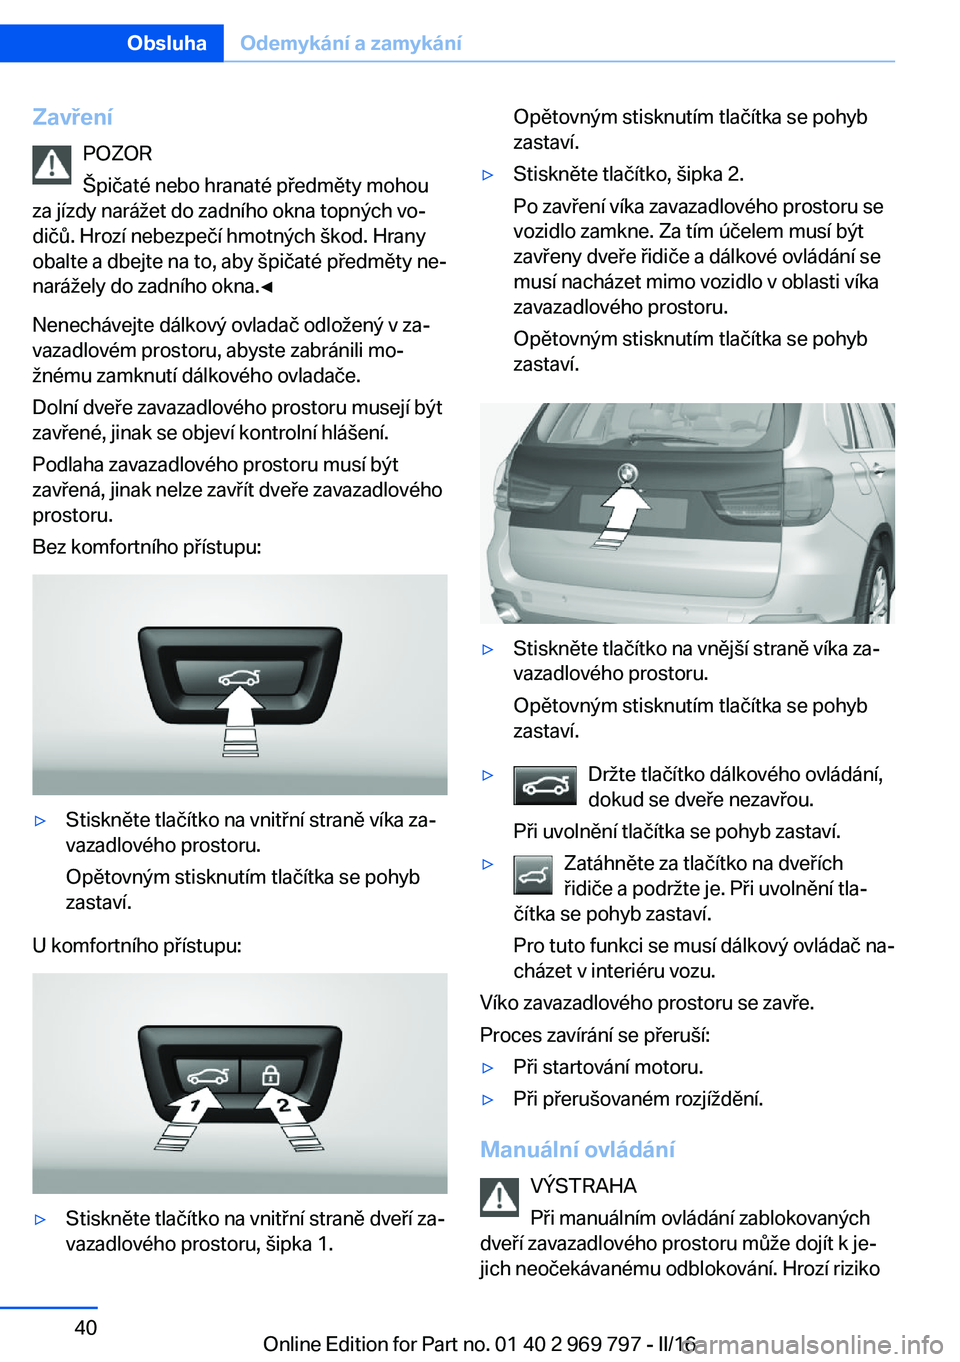 BMW X5 2016  Návod na použití (in Czech) ZavřeníPOZOR
Špičaté nebo hranaté předměty mohou
za jízdy narážet do zadního okna topných vo‐
dičů. Hrozí nebezpečí hmotných škod. Hrany
obalte a dbejte na to, aby špičaté př